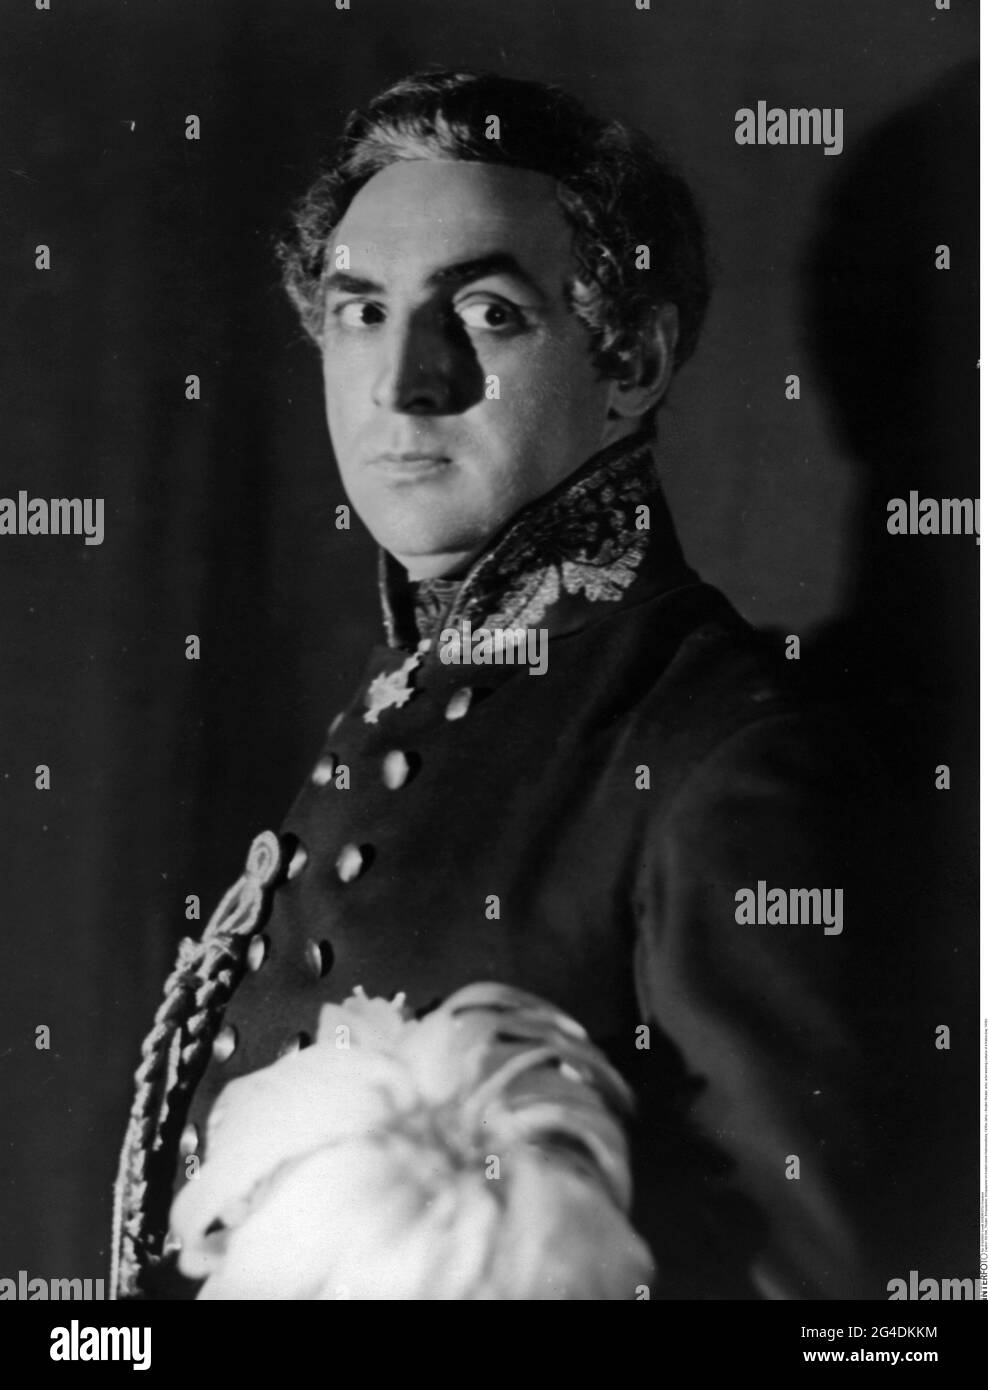 théâtre / théâtre, acteur, acteur portant le costume d'une pièce d'histoire, années 1930, DROITS-SUPPLÉMENTAIRES-AUTORISATION-INFO-NON-DISPONIBLE Banque D'Images